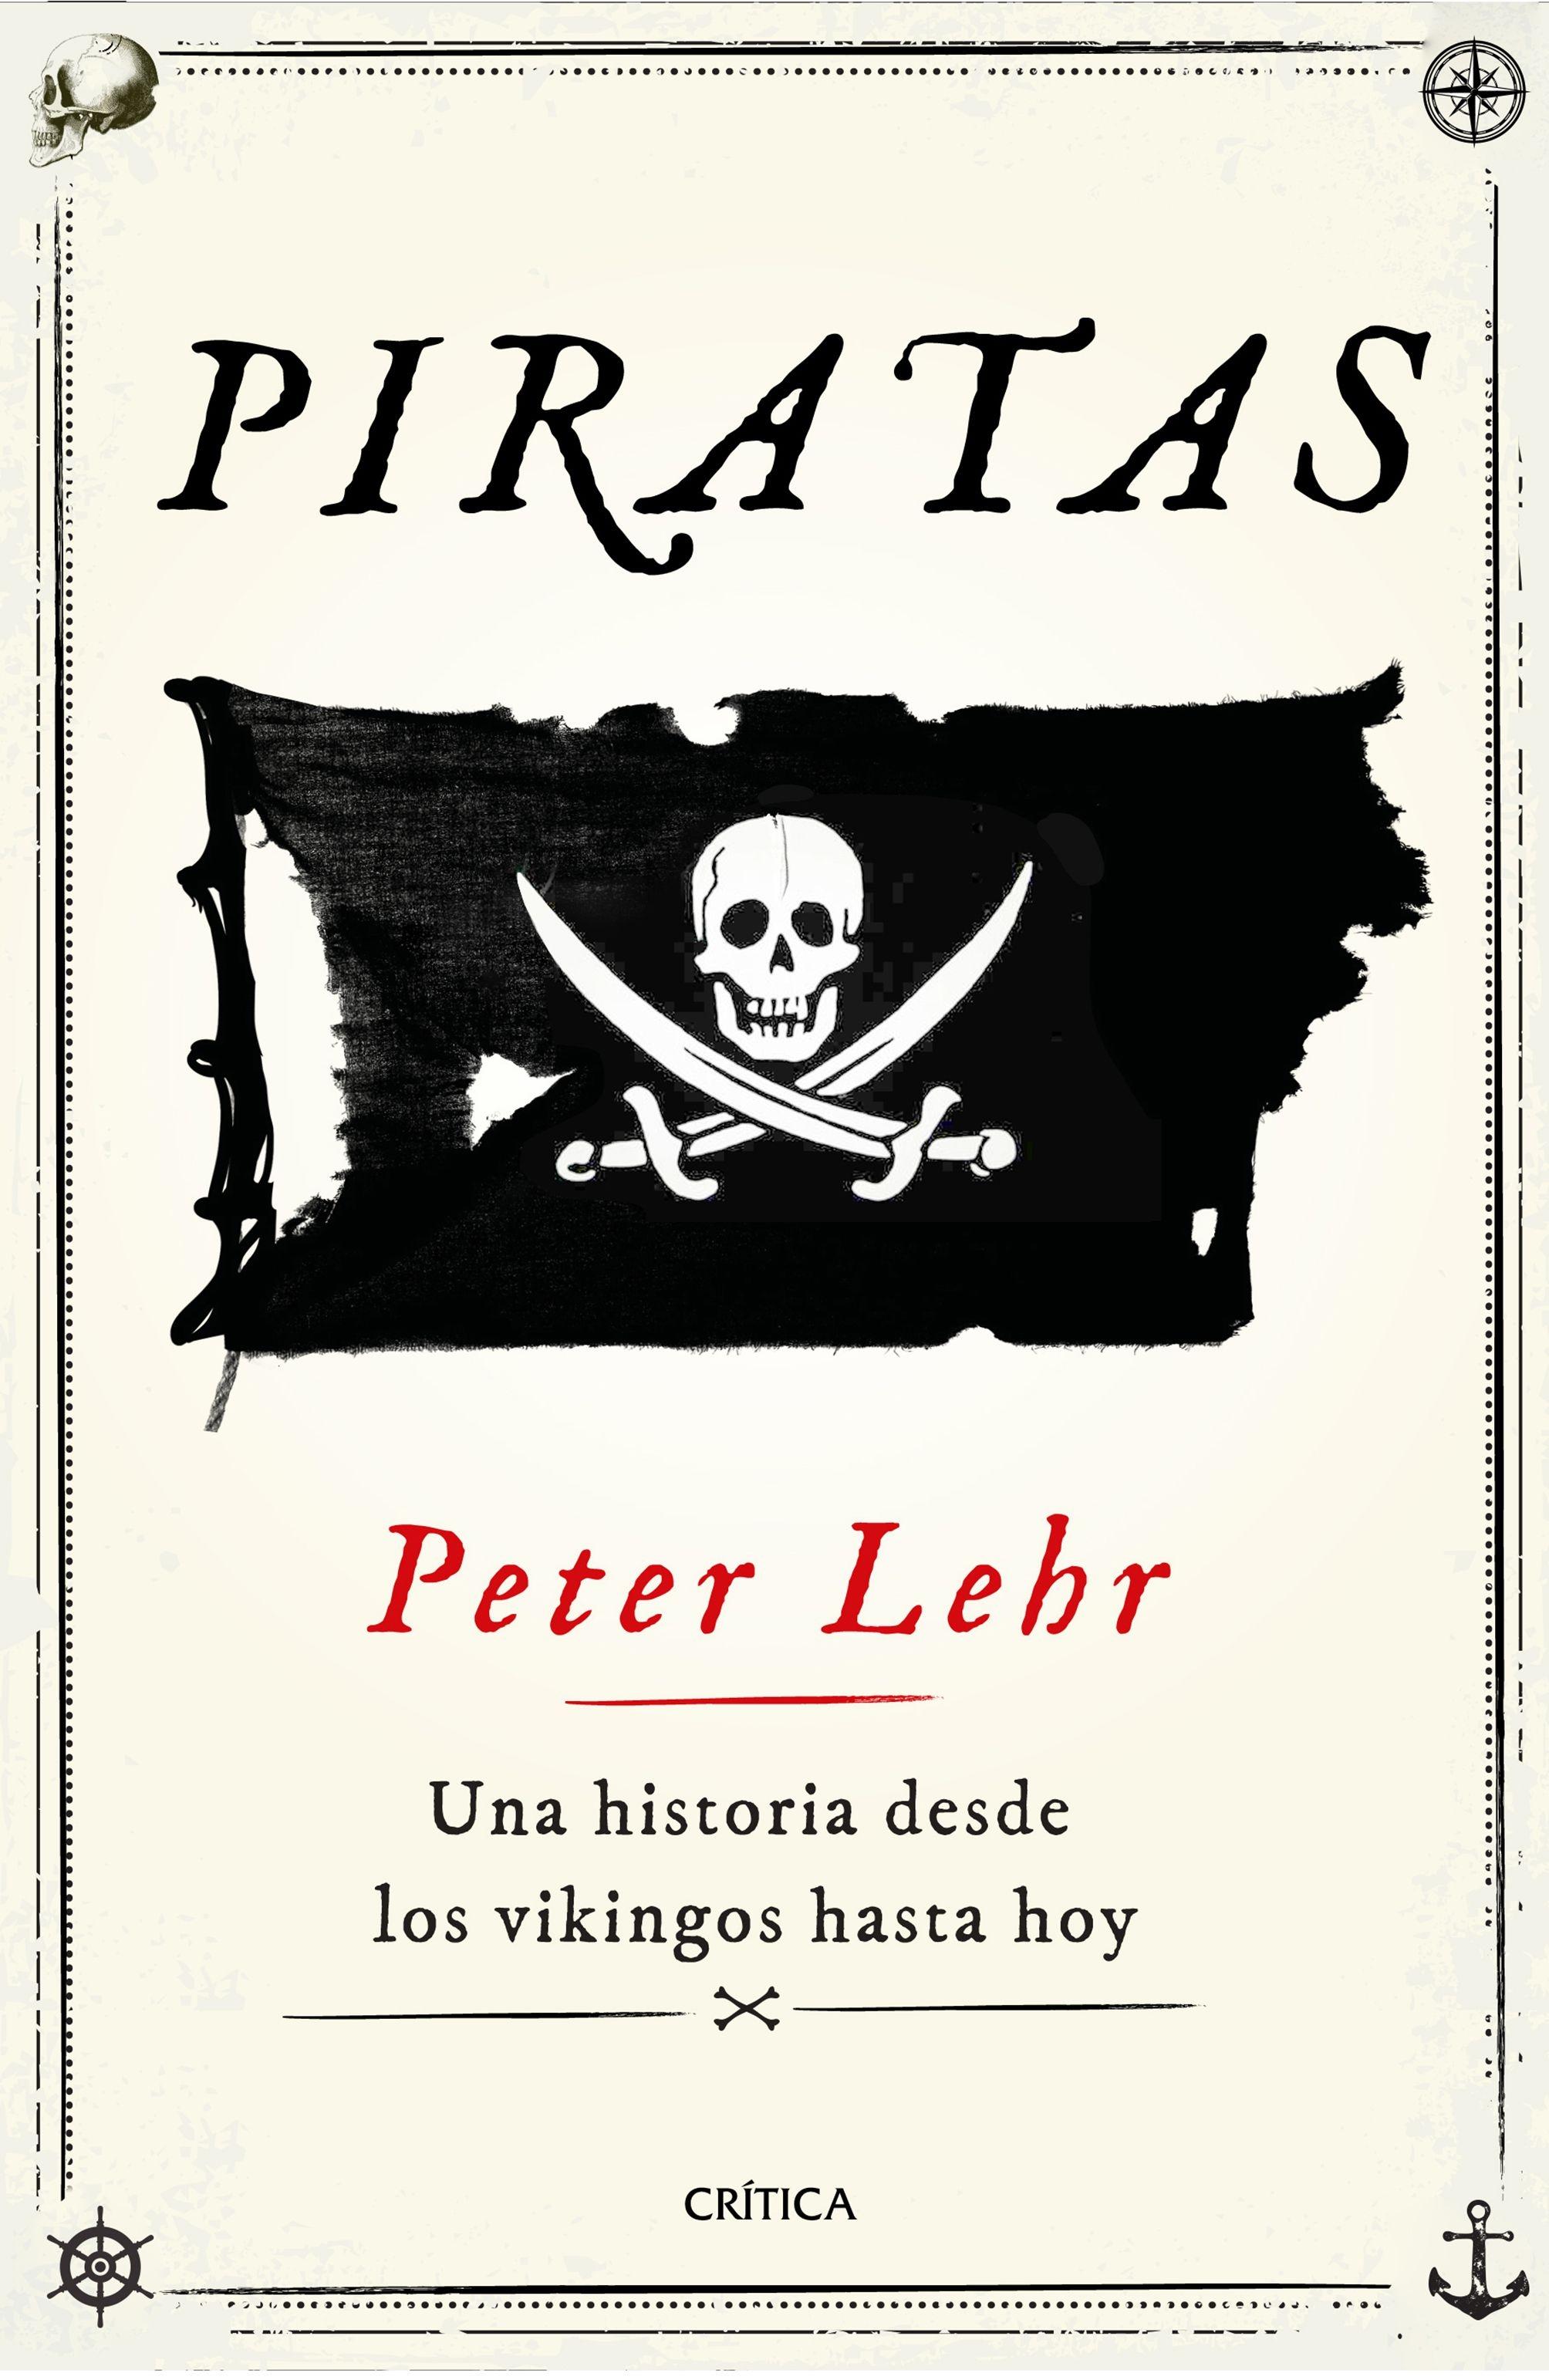 Piratas "Una historia desde los vikingos hasta hoy"